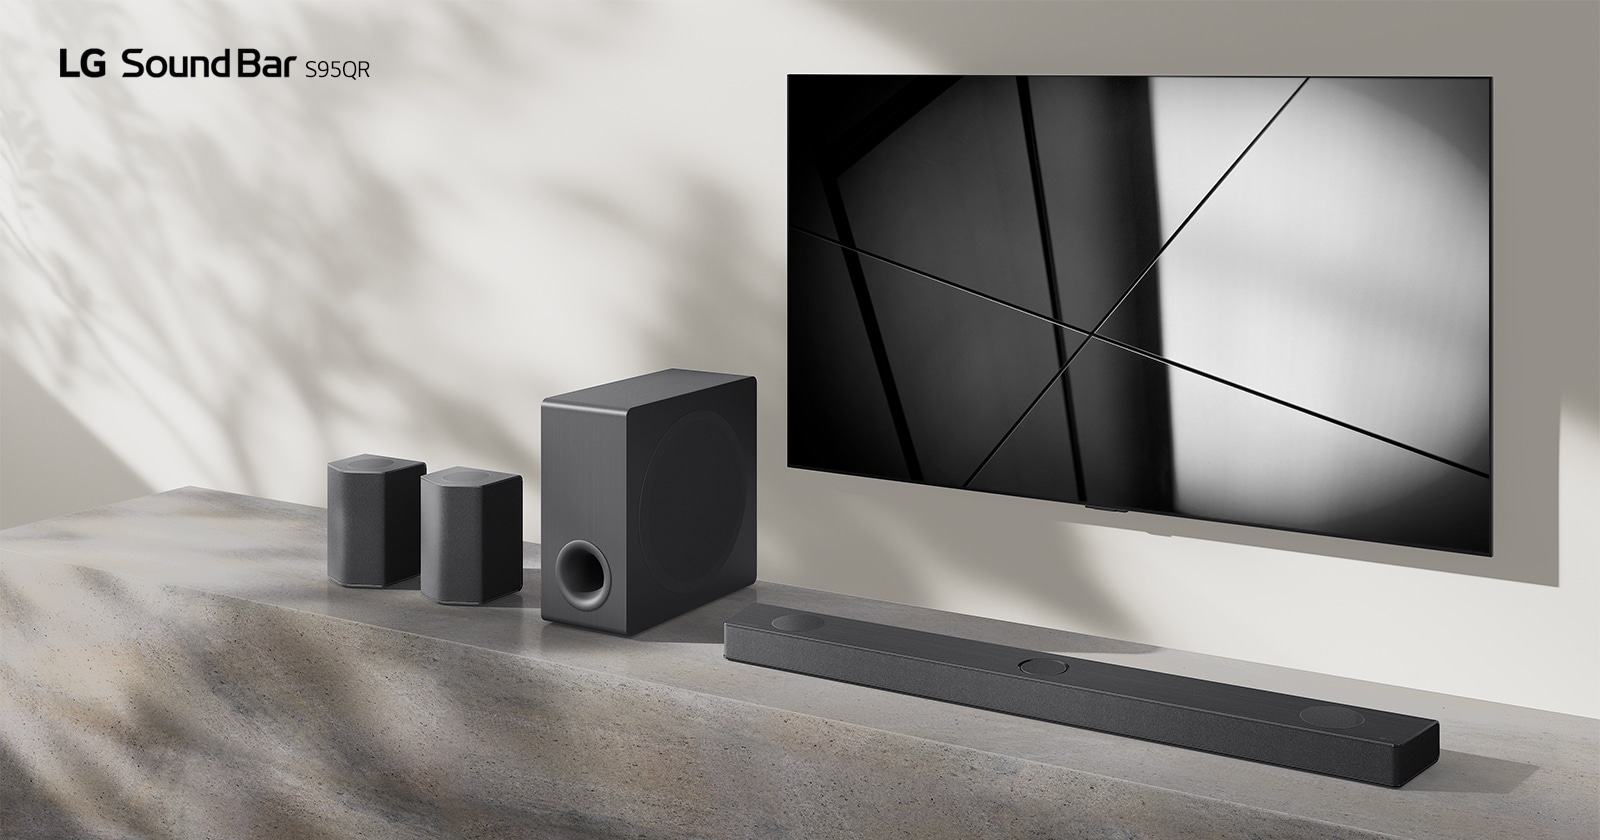 Саундбар LG S95QR и телевизор LG расположены вместе в гостиной. Телевизор включен, показывает черно-белое изображение.